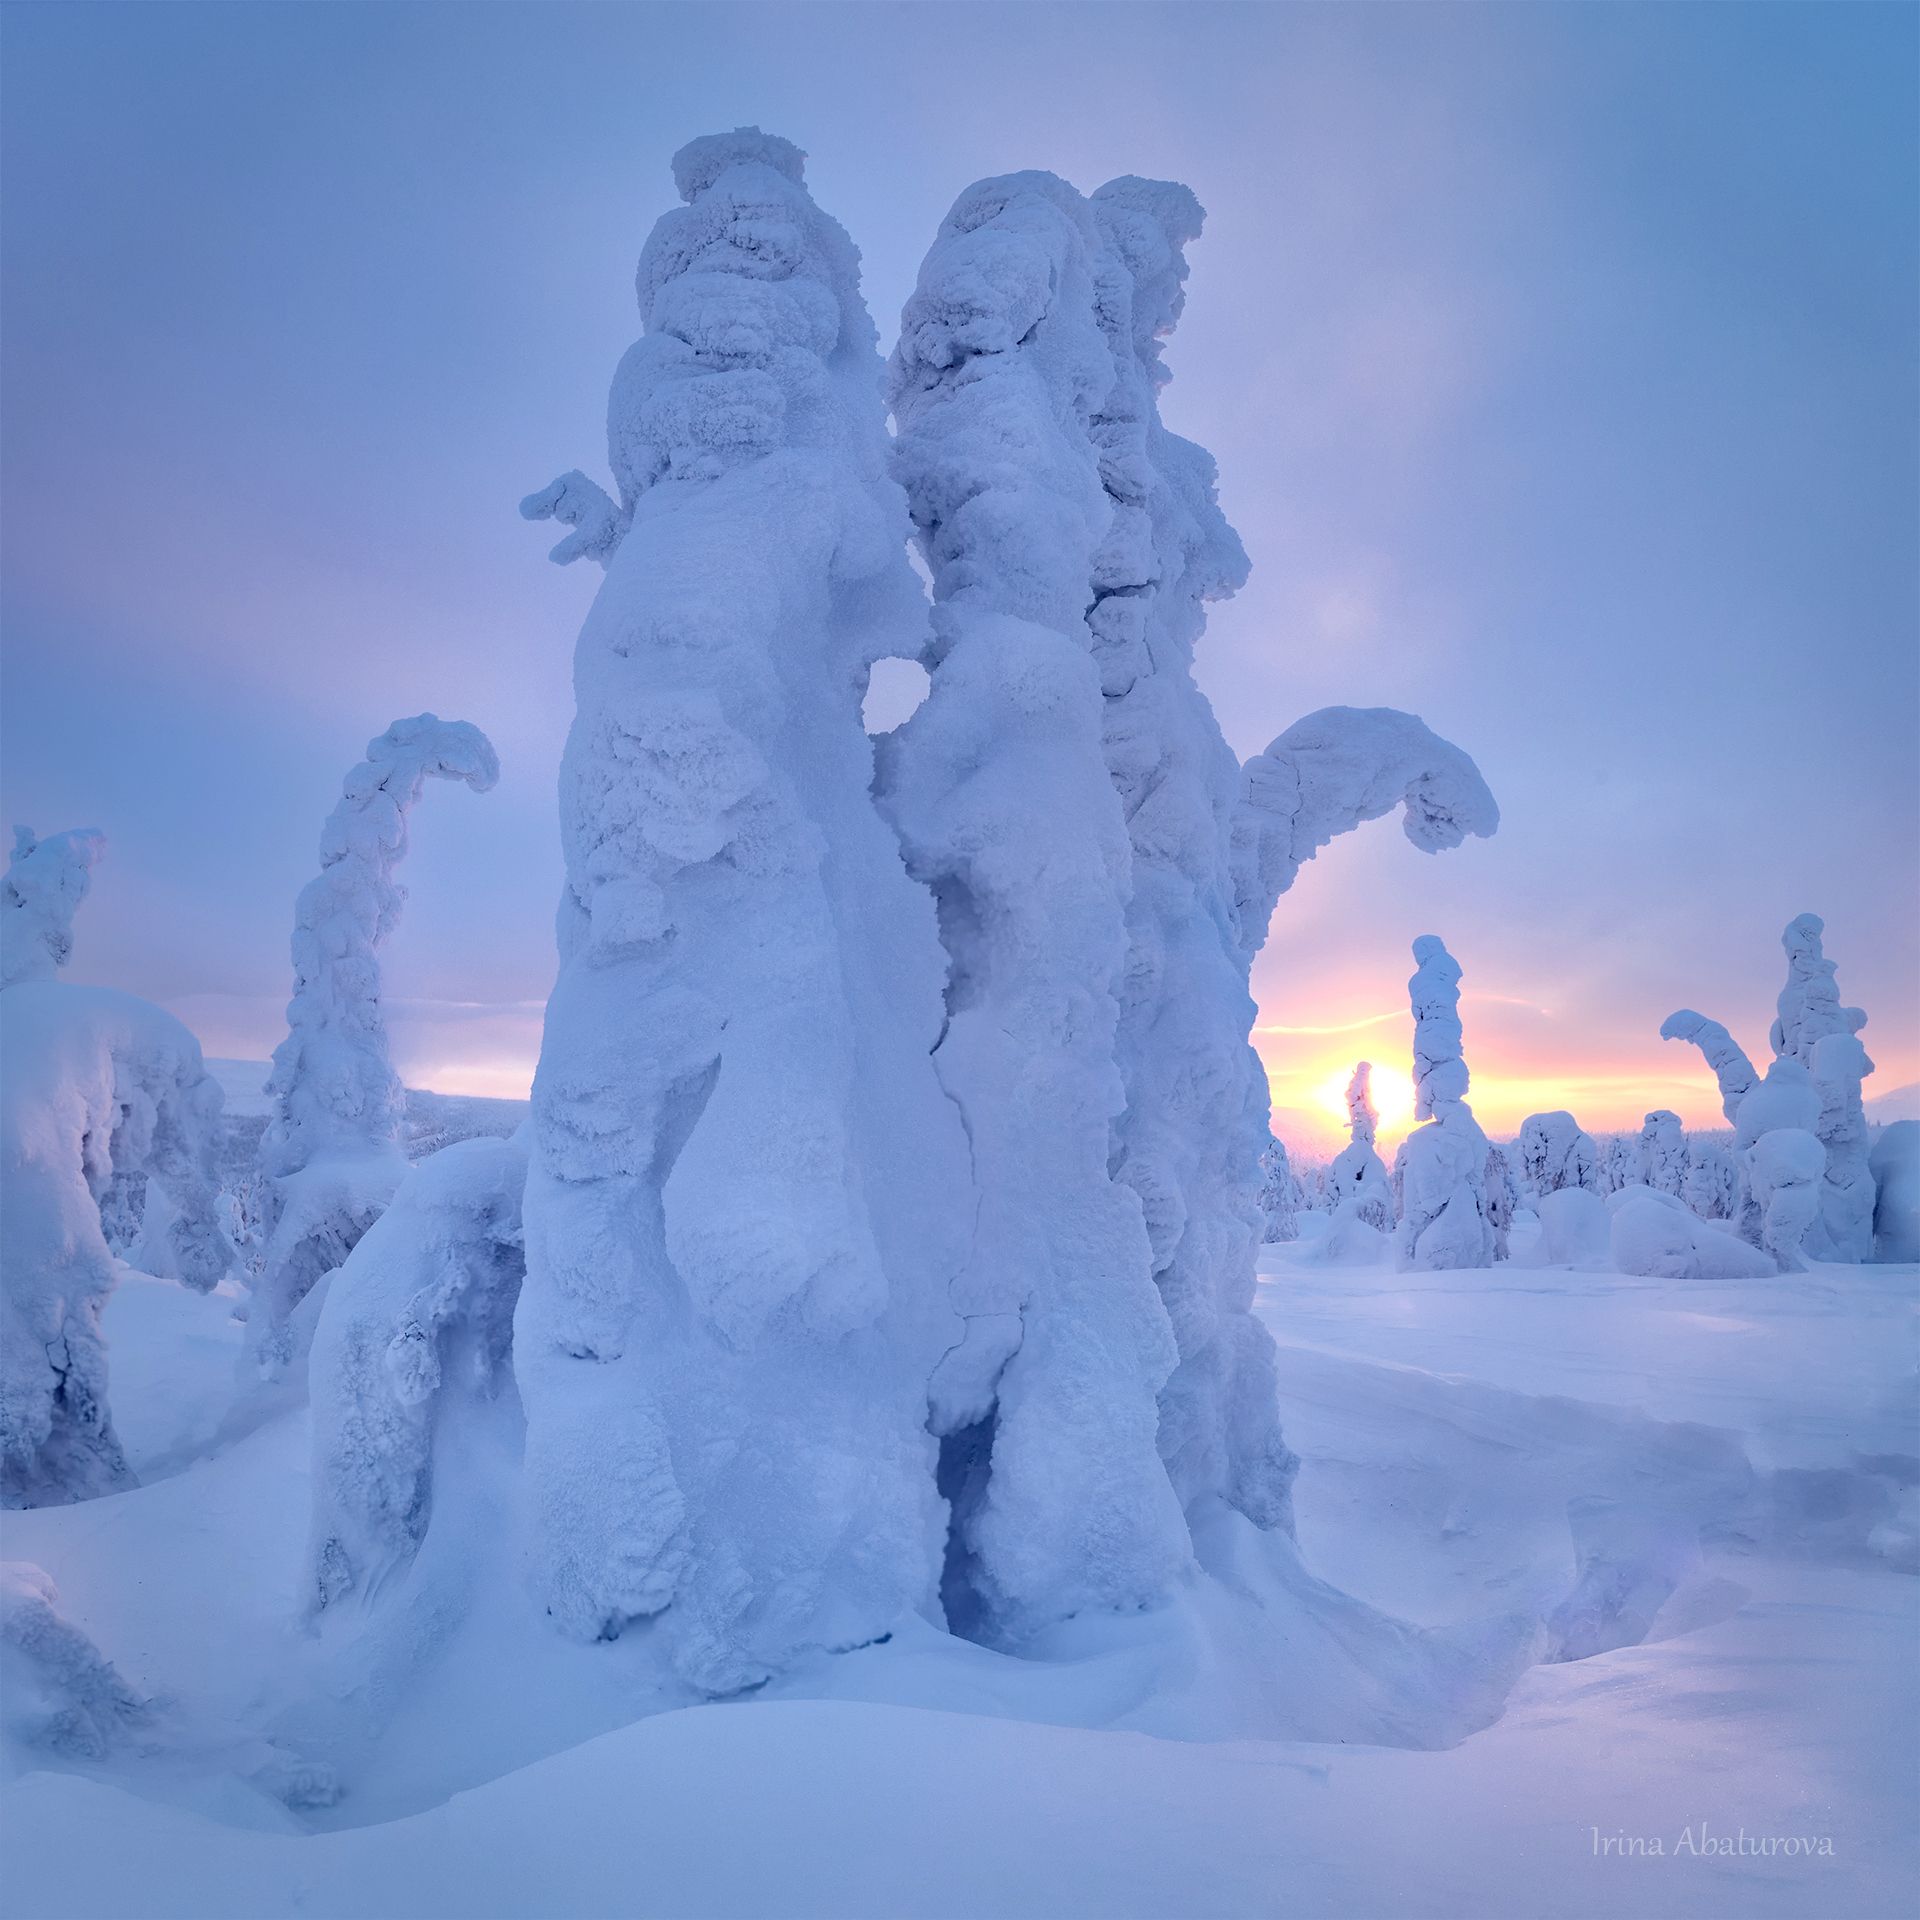 зима, урал, север, снег, ветер, сугроб, гух, главный уральский хребет, заснеженные деревья, Ирина Абатурова